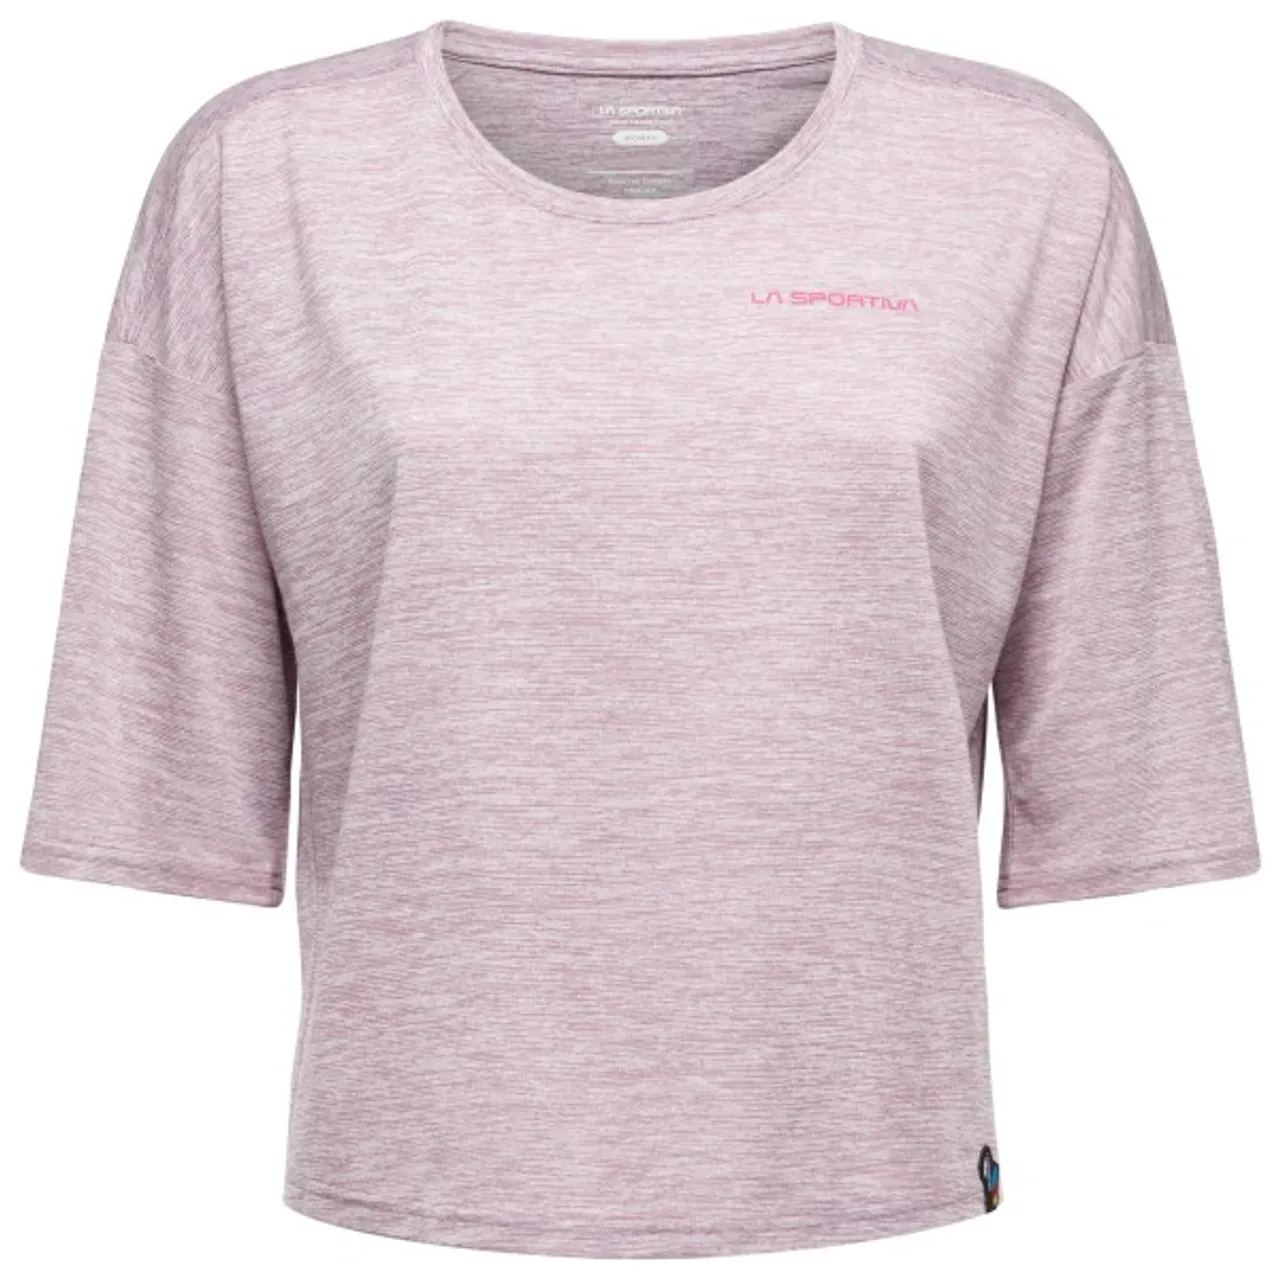 La Sportiva - Women's Cave Paint - T-Shirt